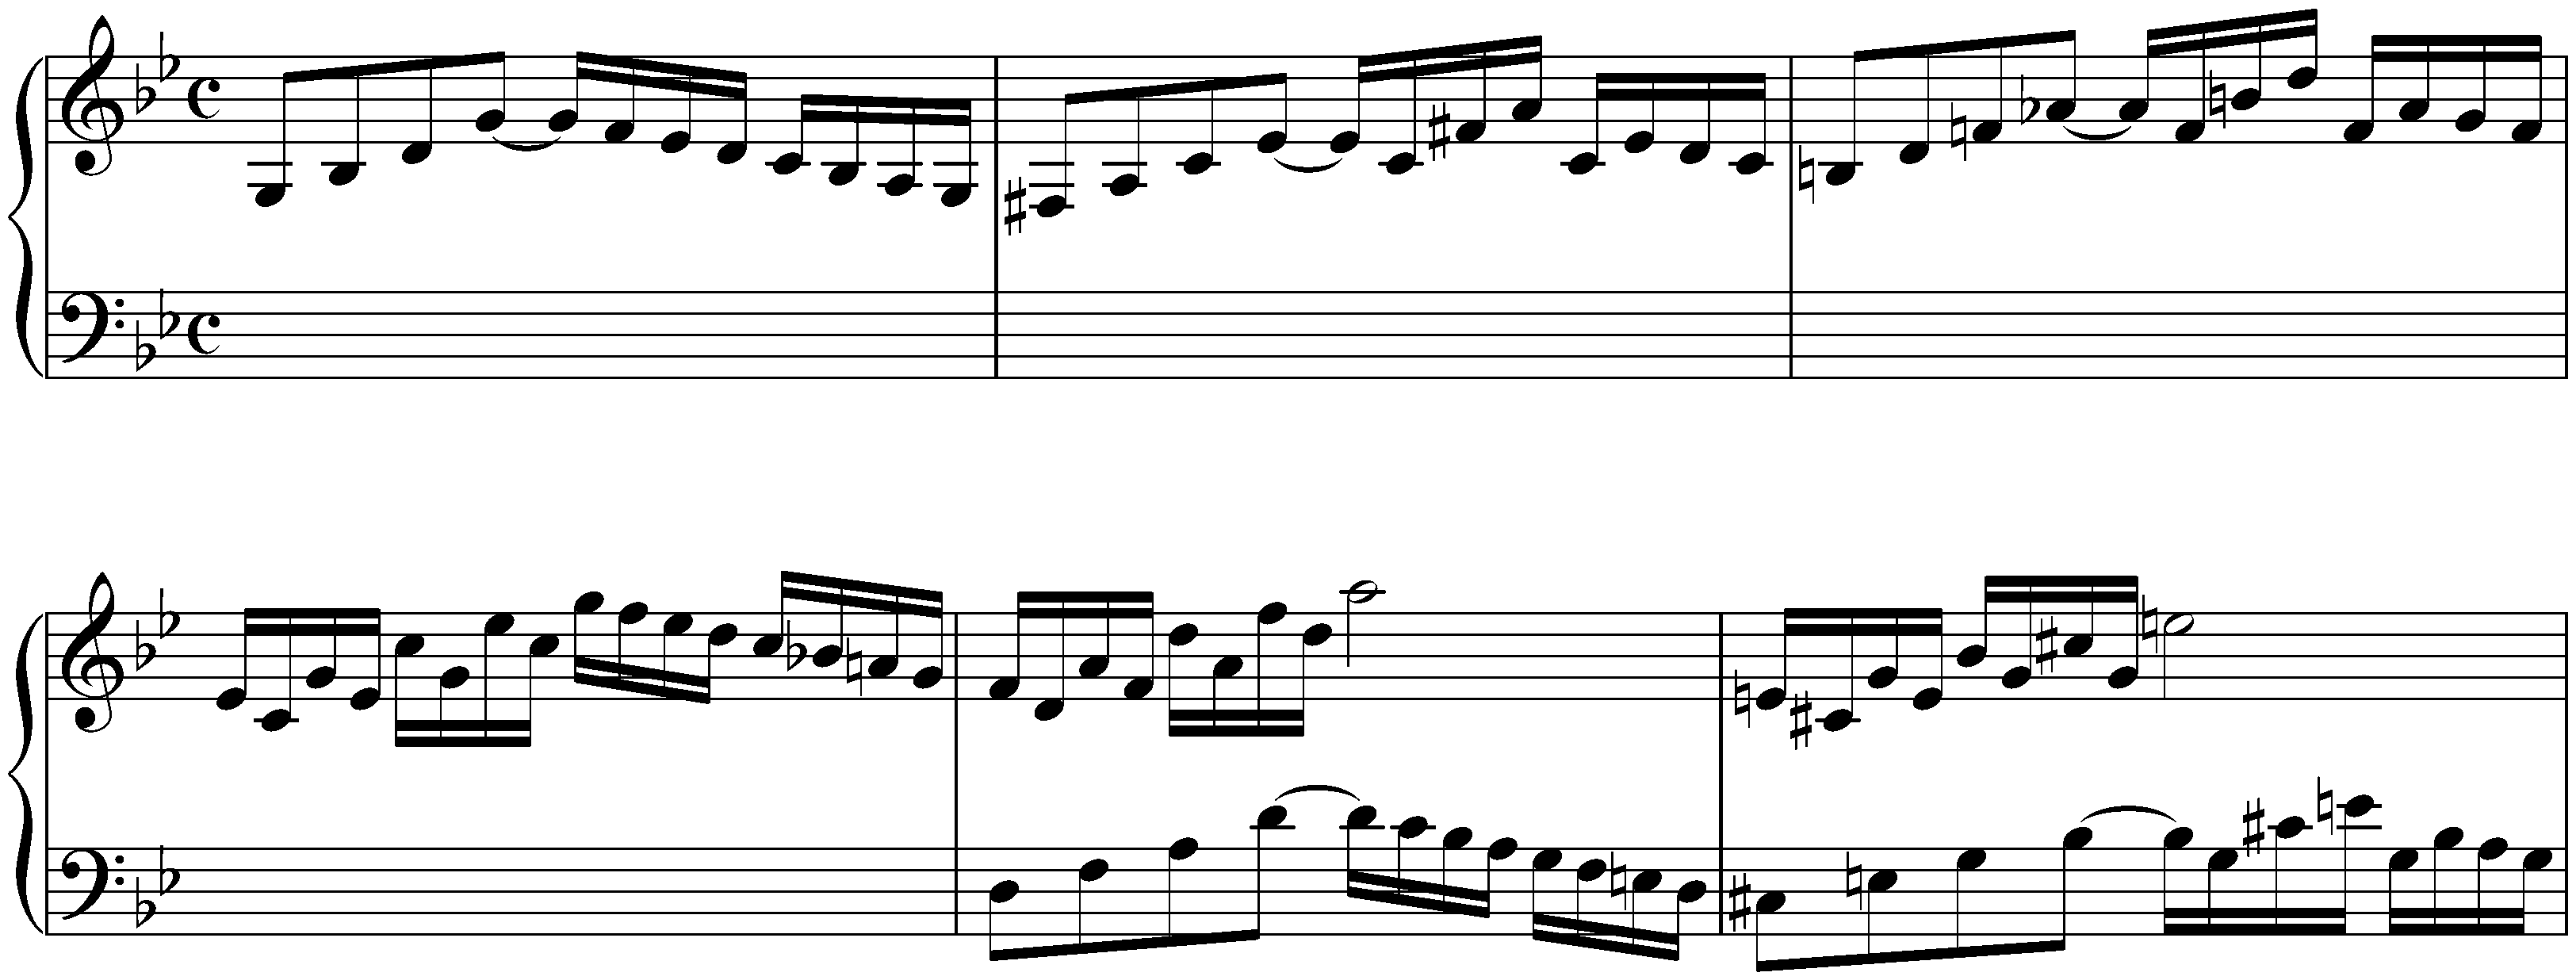 Capriccio in G minor, HWV 483